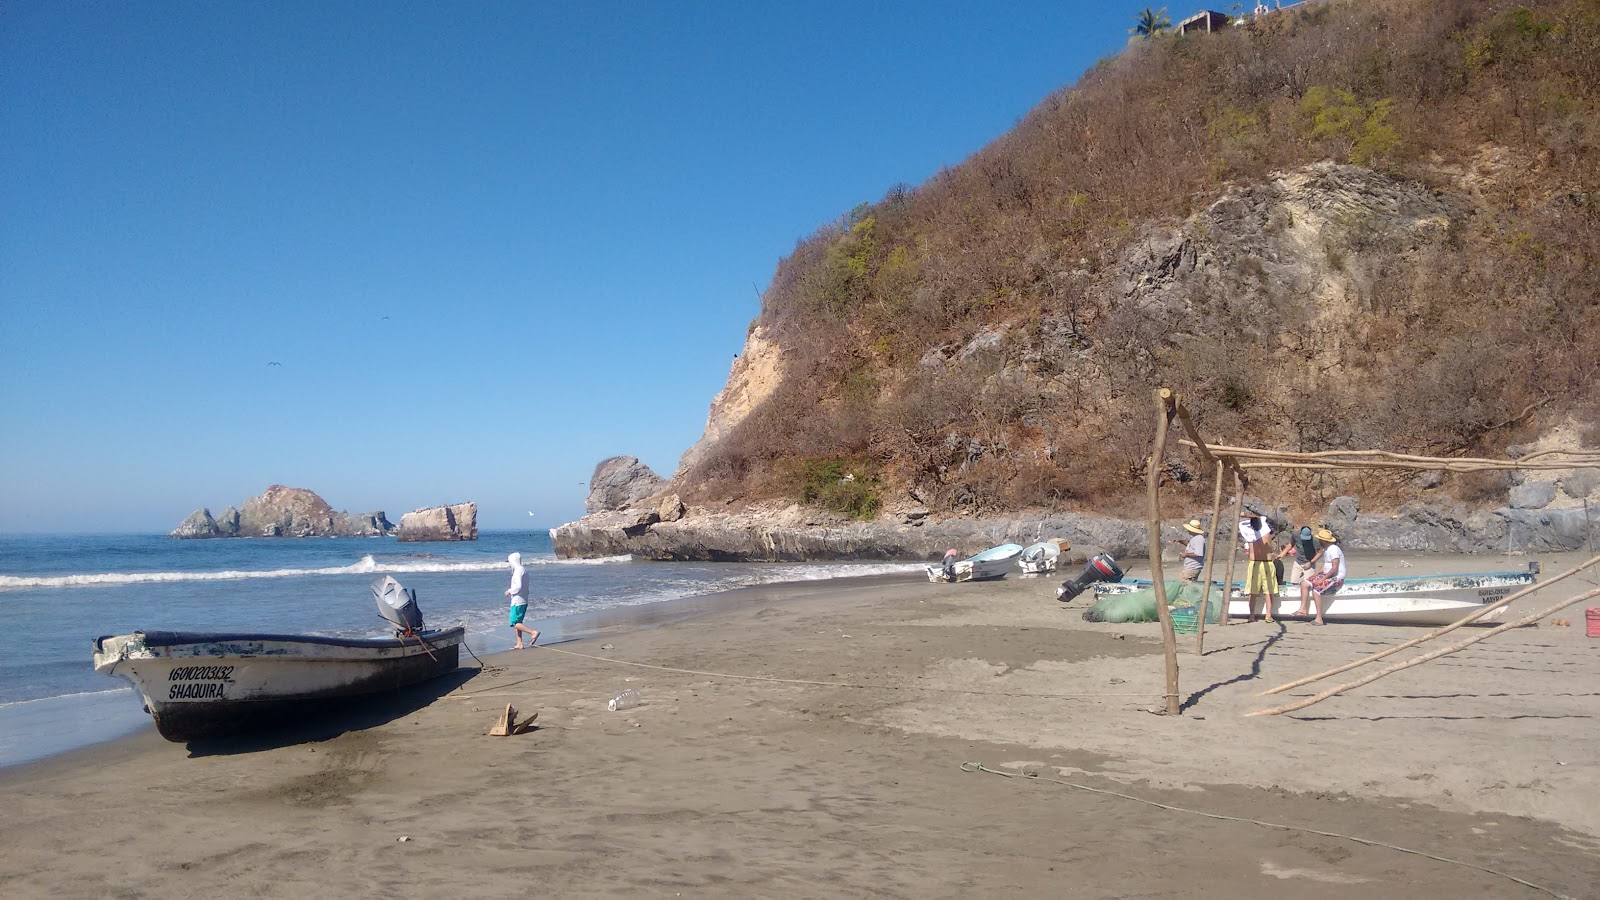 Playa El Zapote'in fotoğrafı geniş plaj ile birlikte